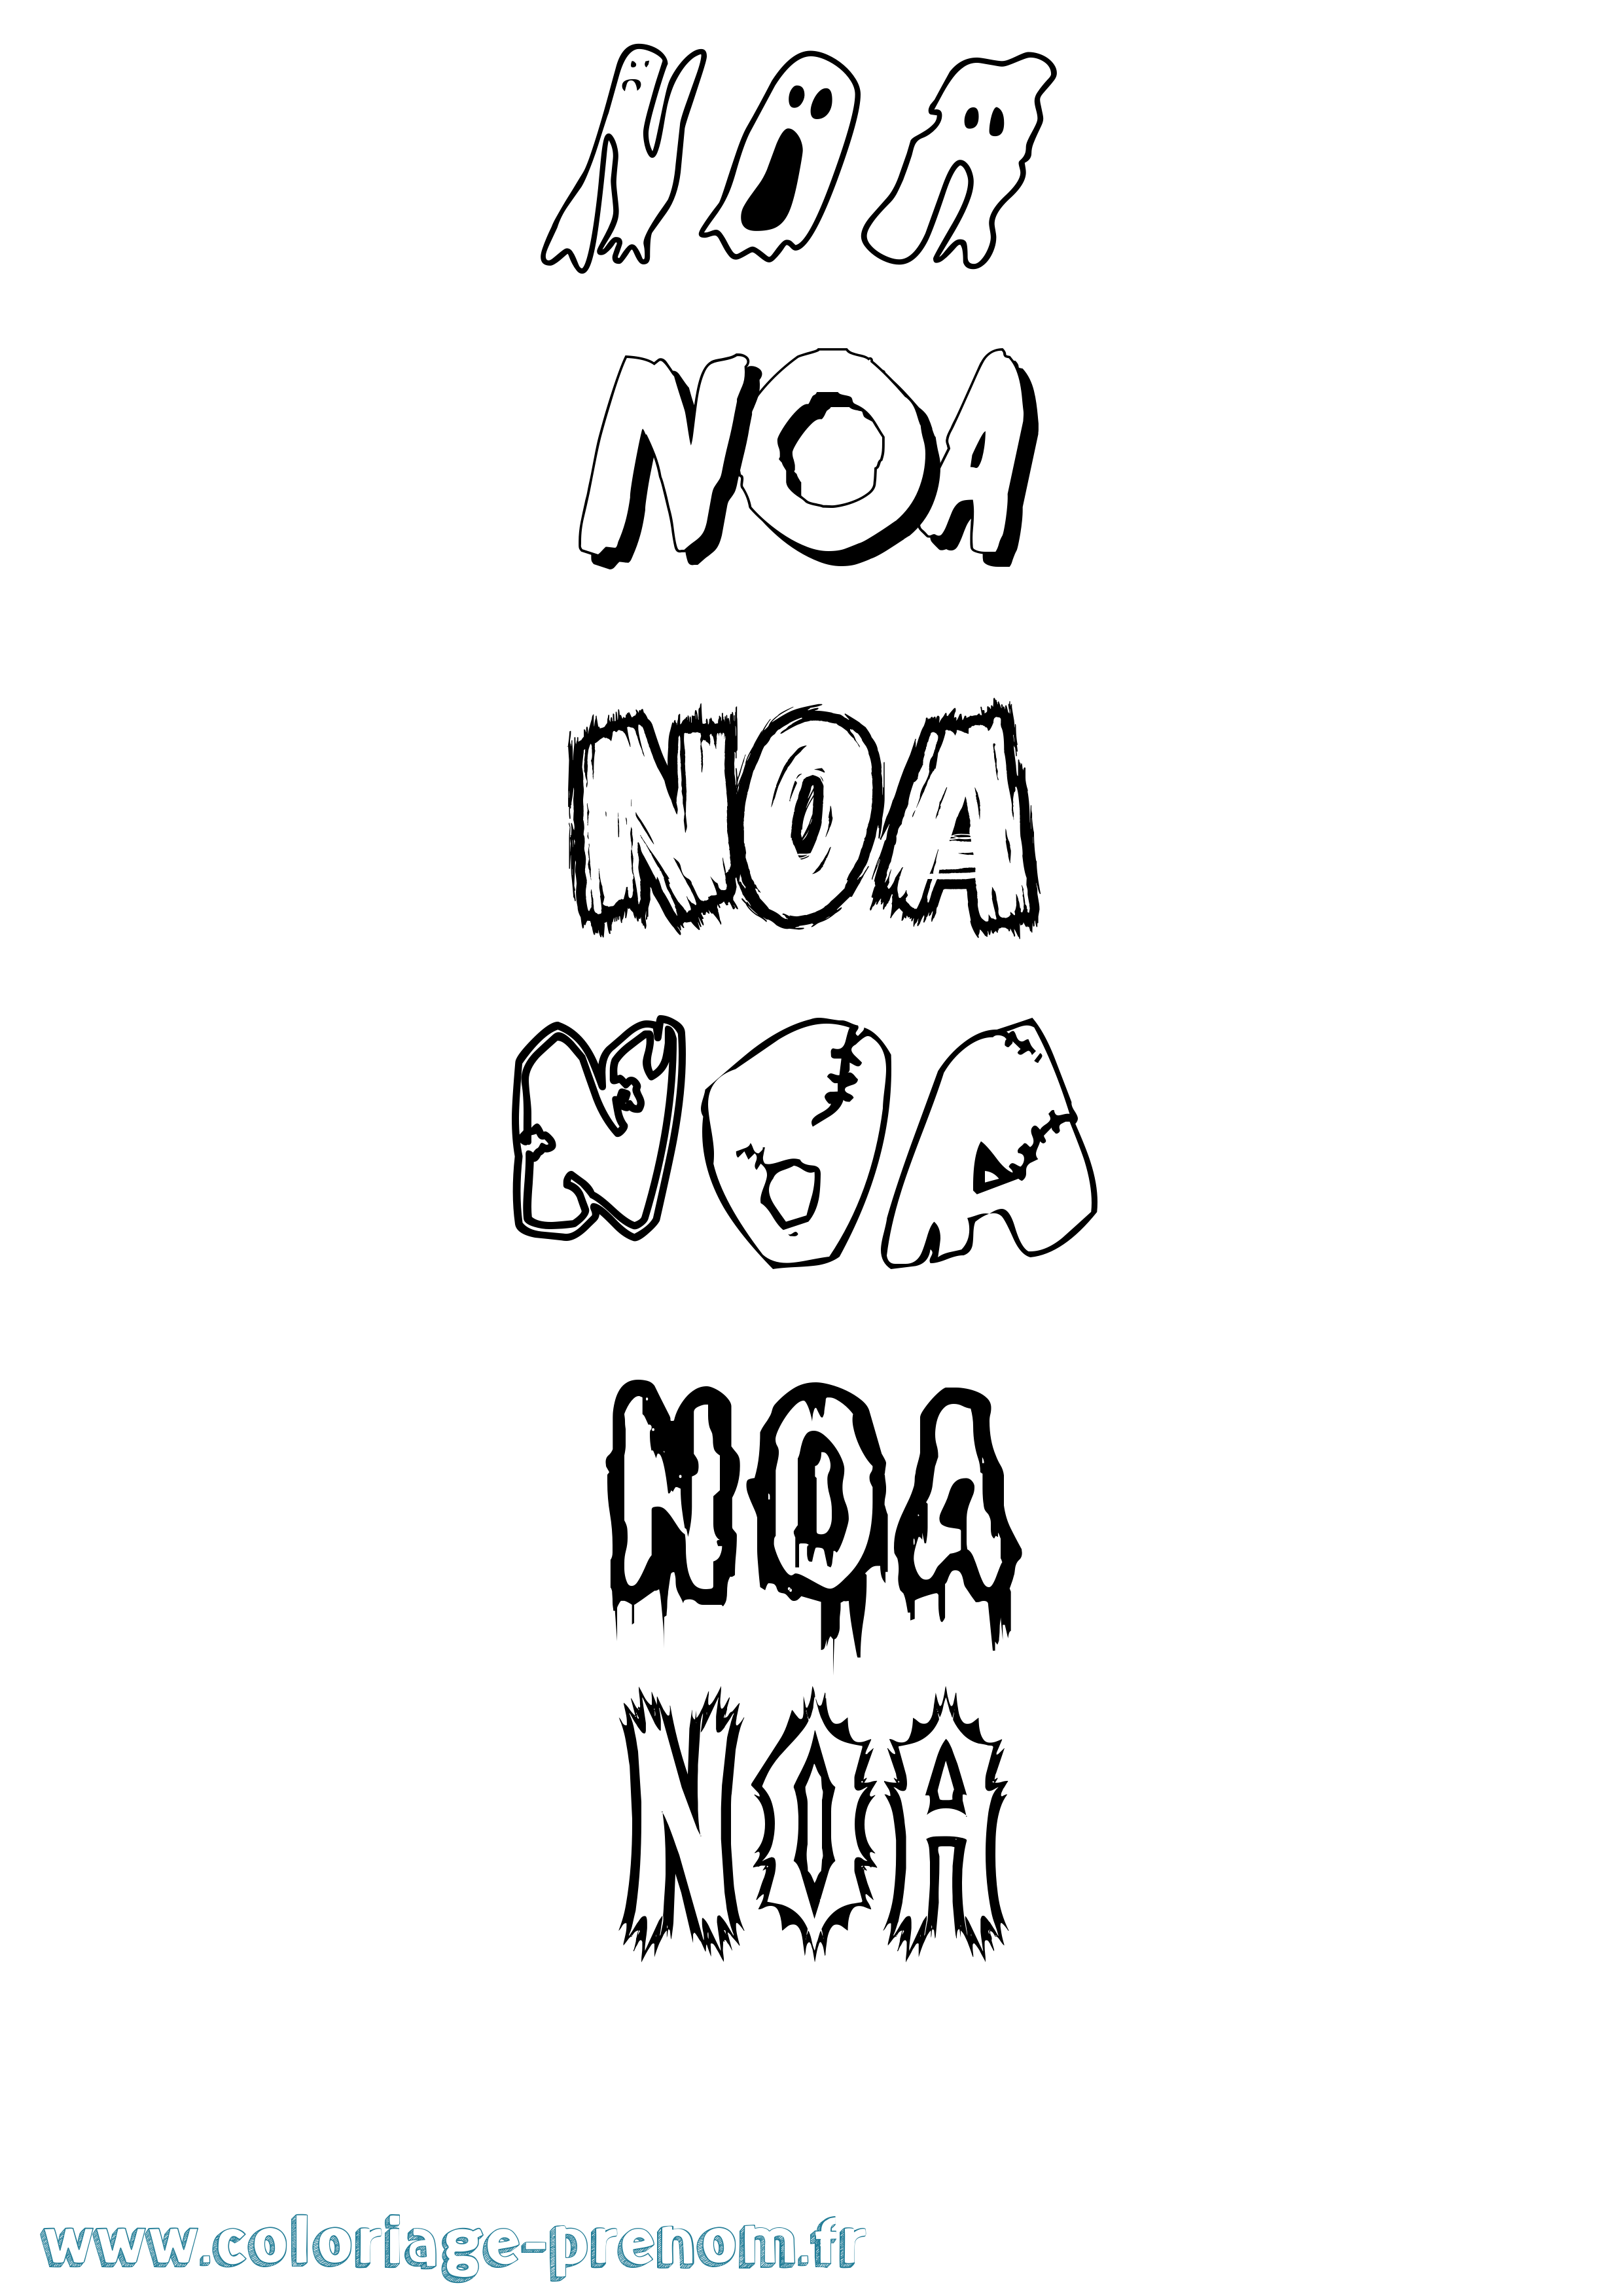 Coloriage prénom Noa